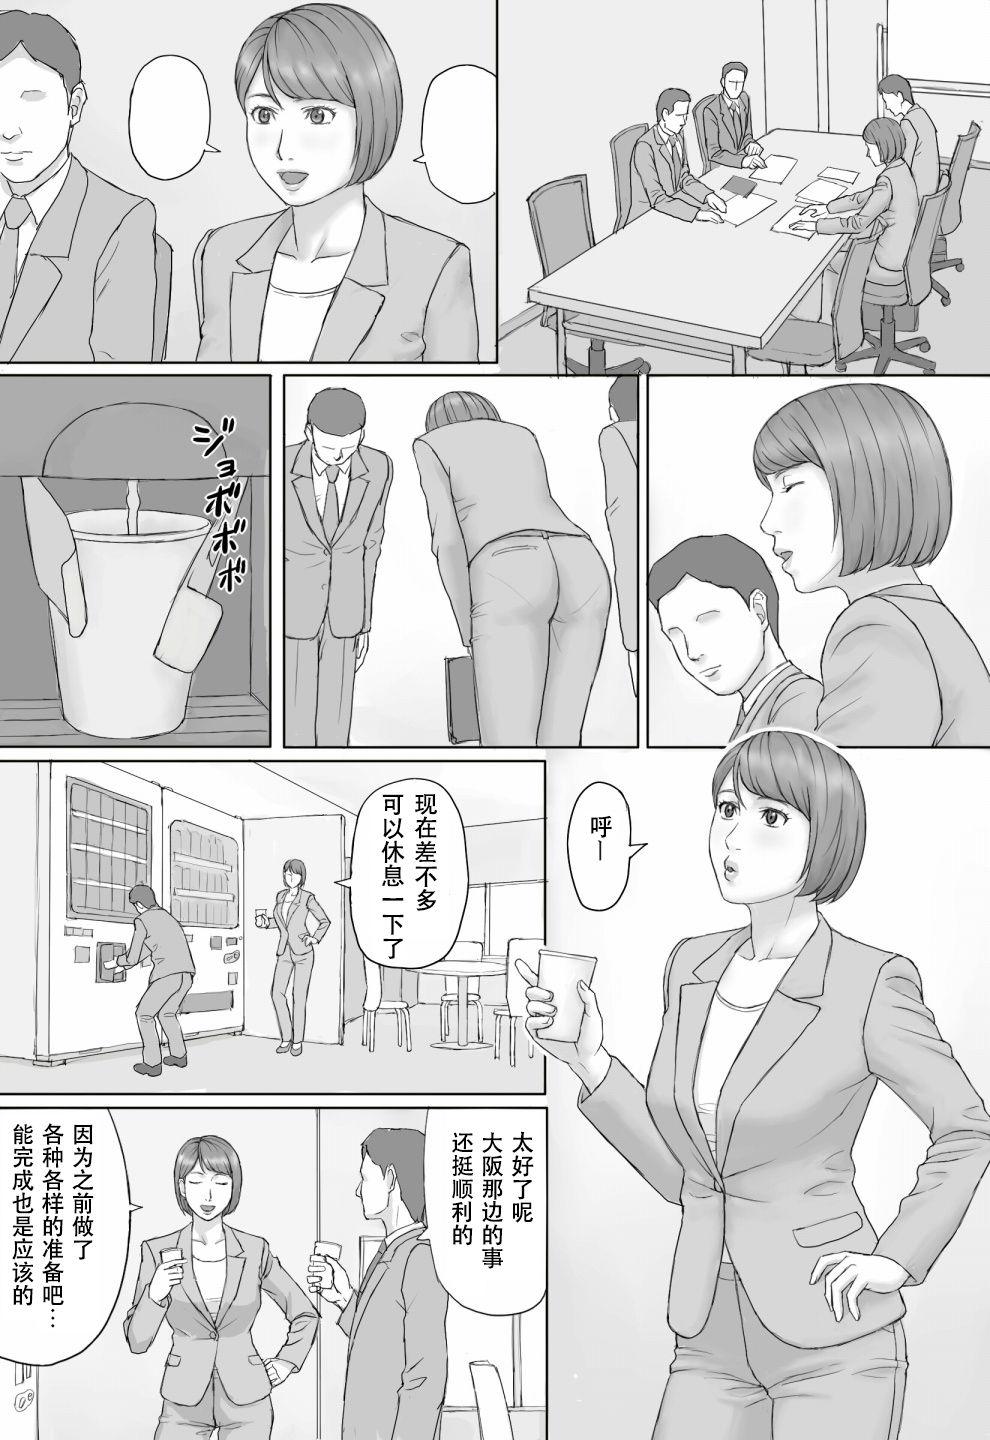 Police Moshimo no sekai - Original Facesitting - Page 8